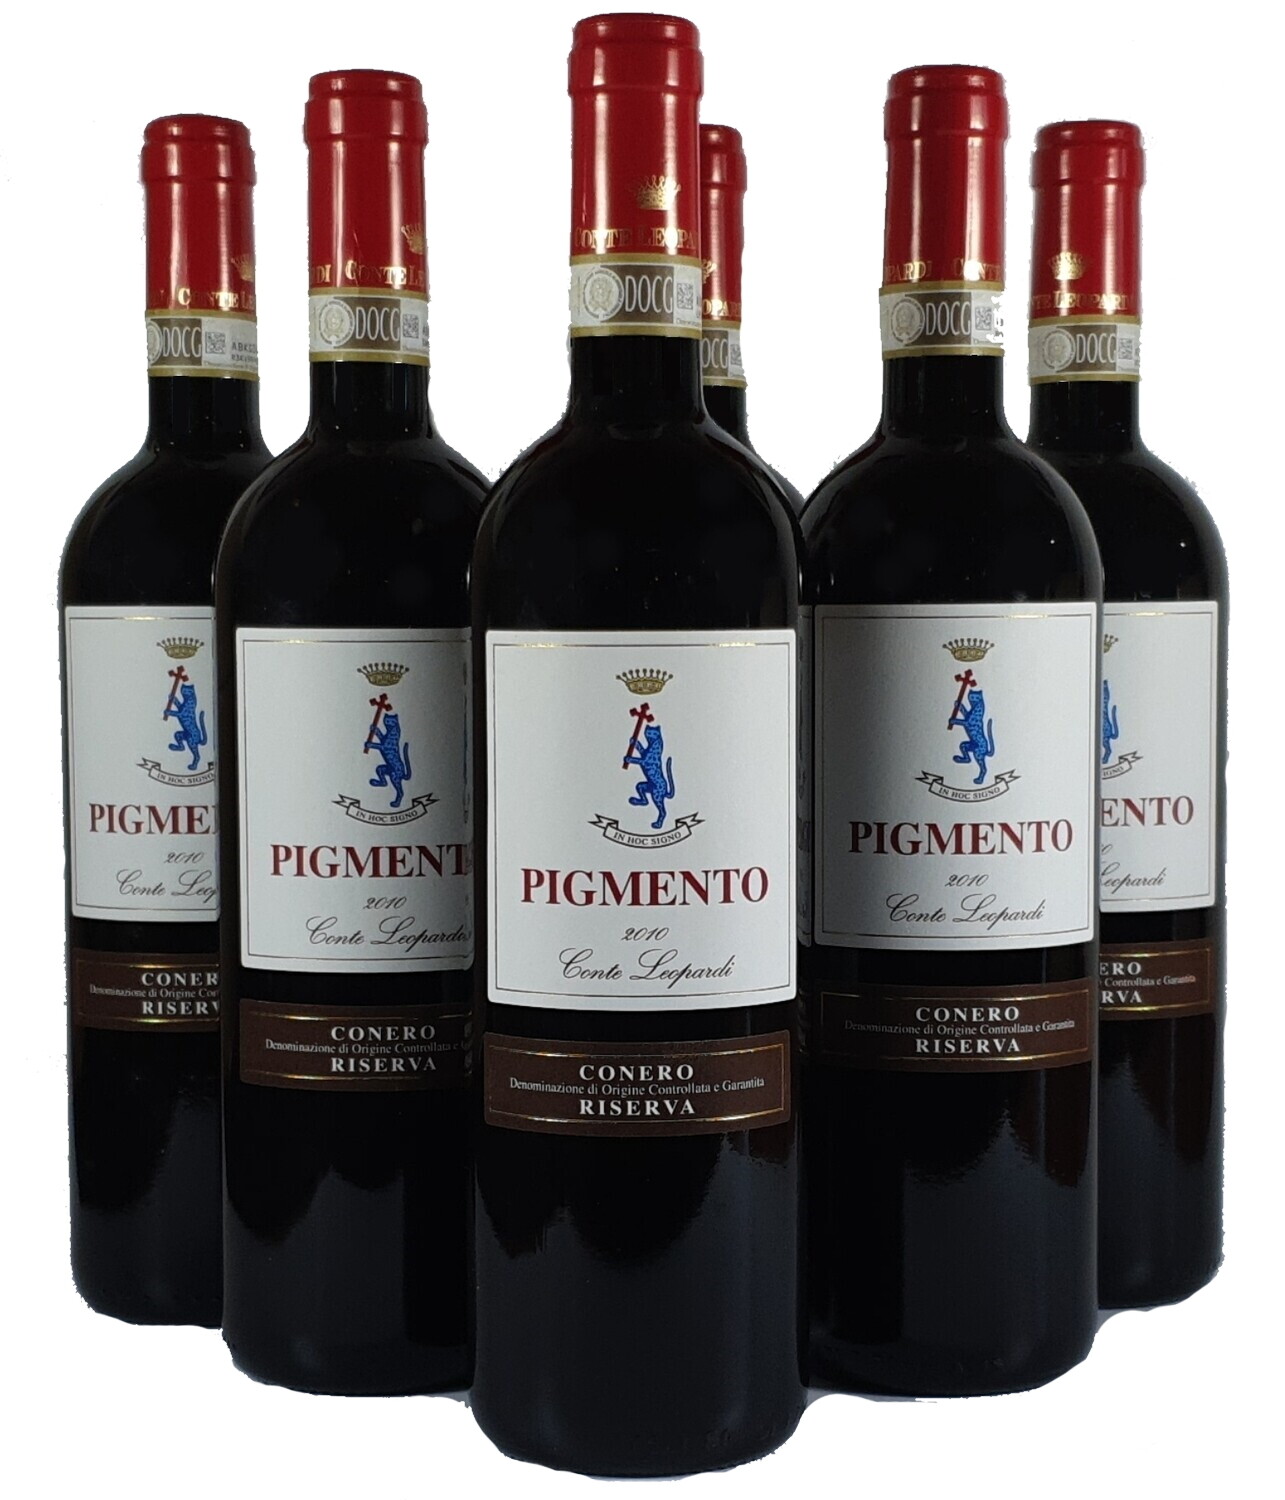 PIGMENTO Conero DOCG Riserva 2014
Confezione da 6 Bottiglie